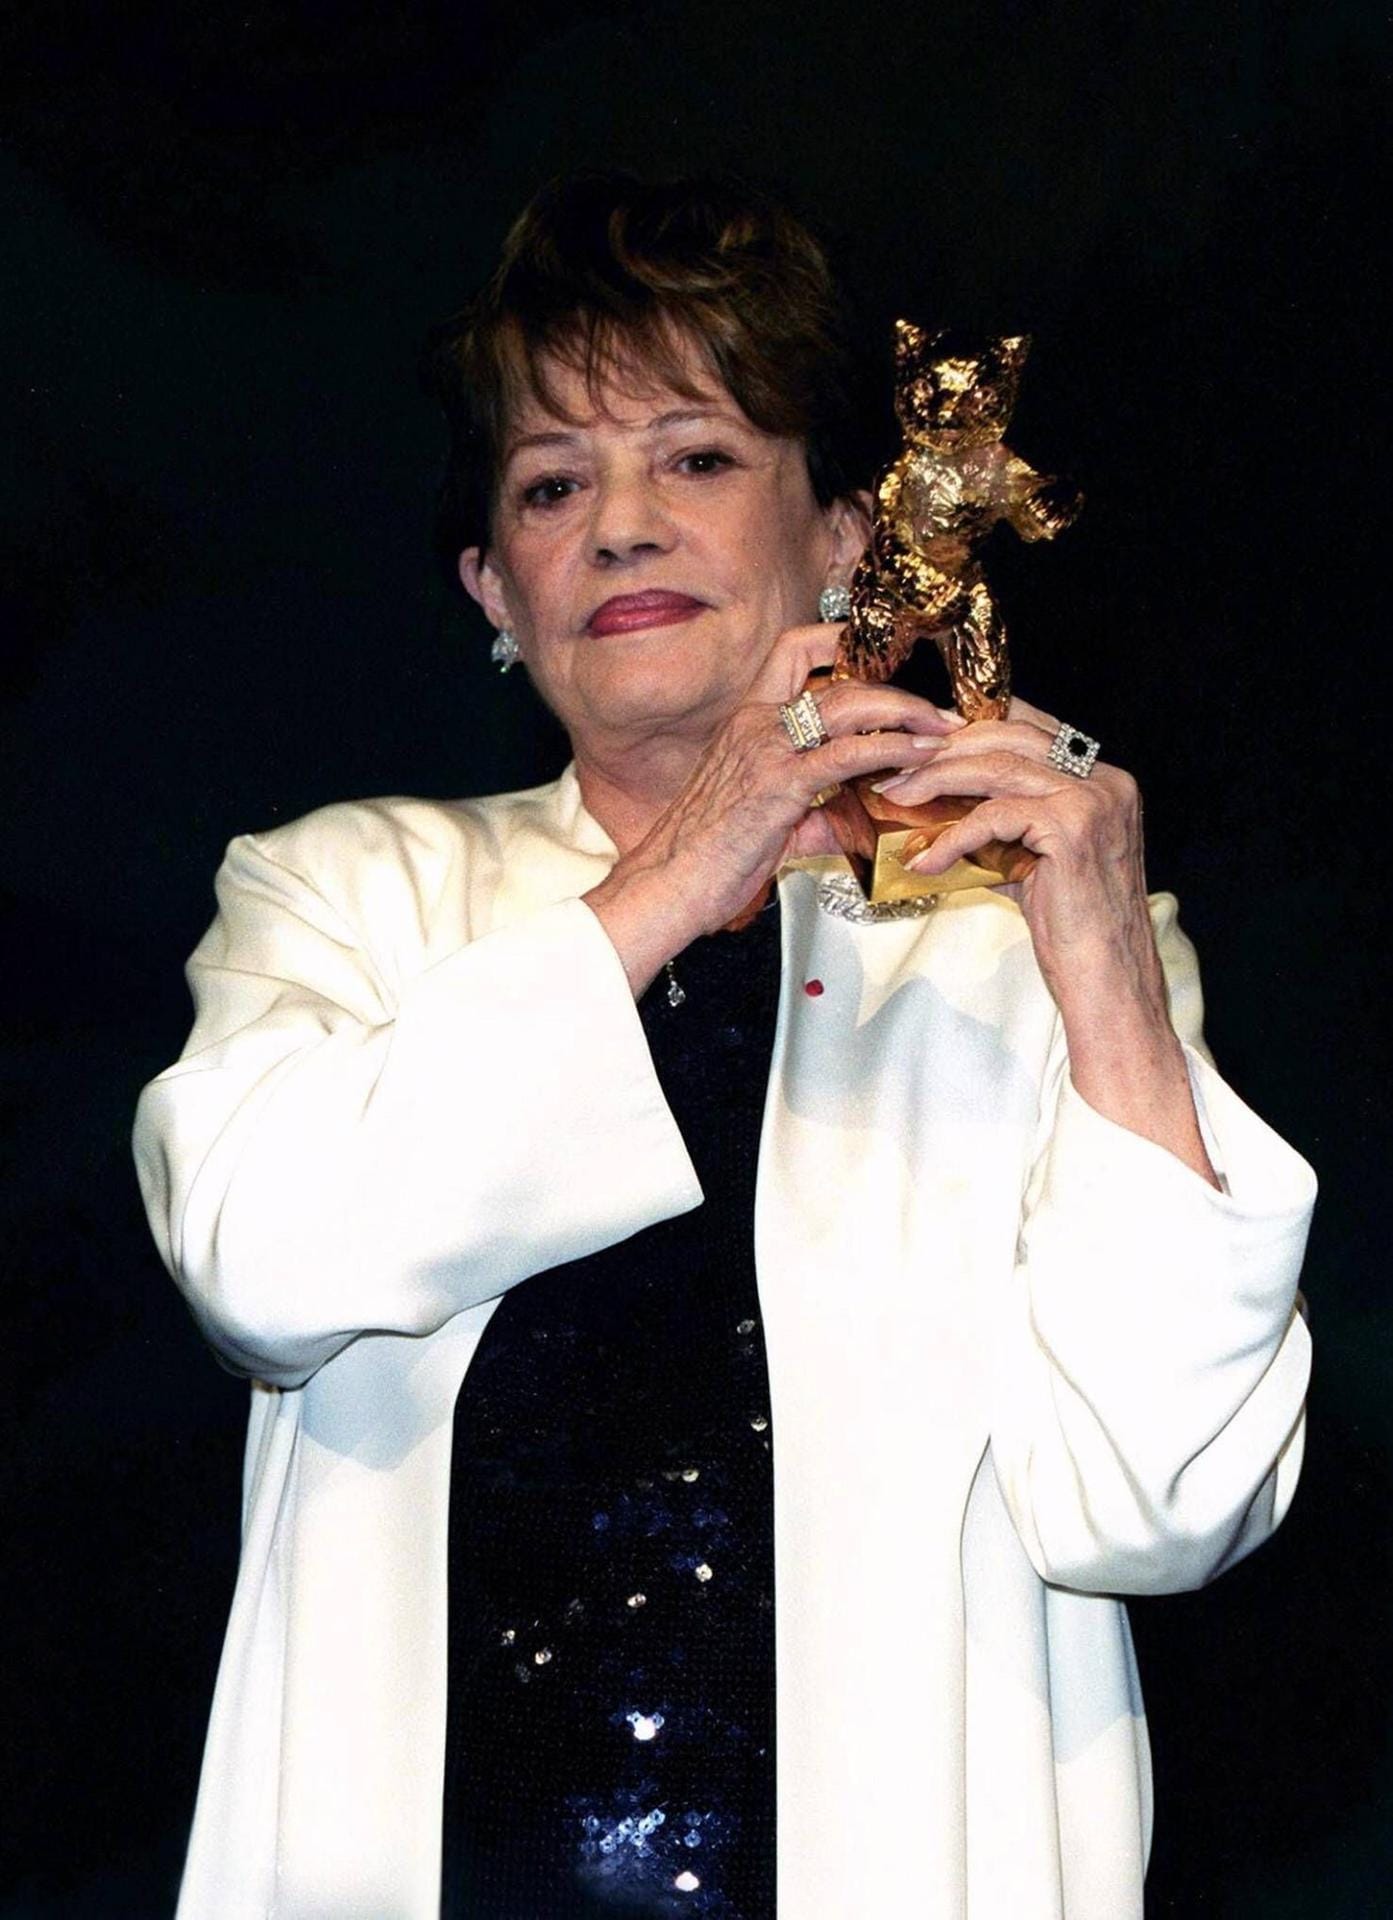 Moreau war gern gesehener Gast auf der Berlinale, neben Cannes das bedeutenste Filmfestival der Welt. 2000 wurde sie dort mit dem Goldenen Bären für ihr Lebenswerk geehrt.